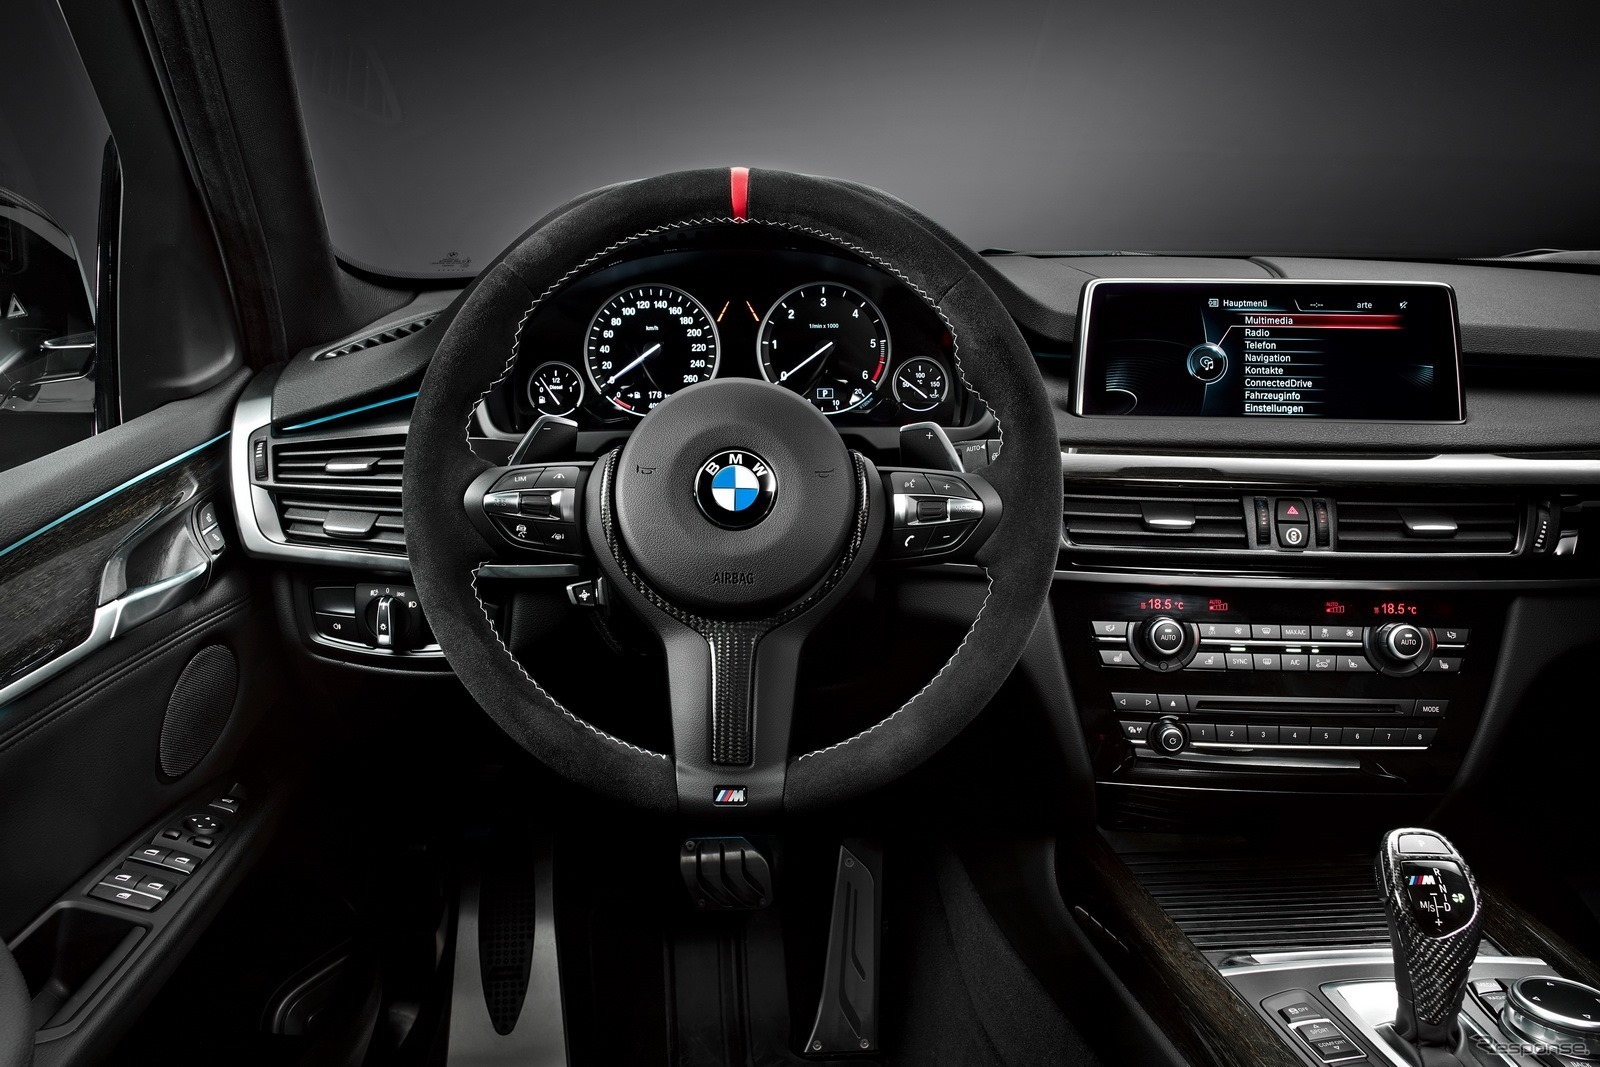 新型BMW X5 のMパフォーマンスパーツ